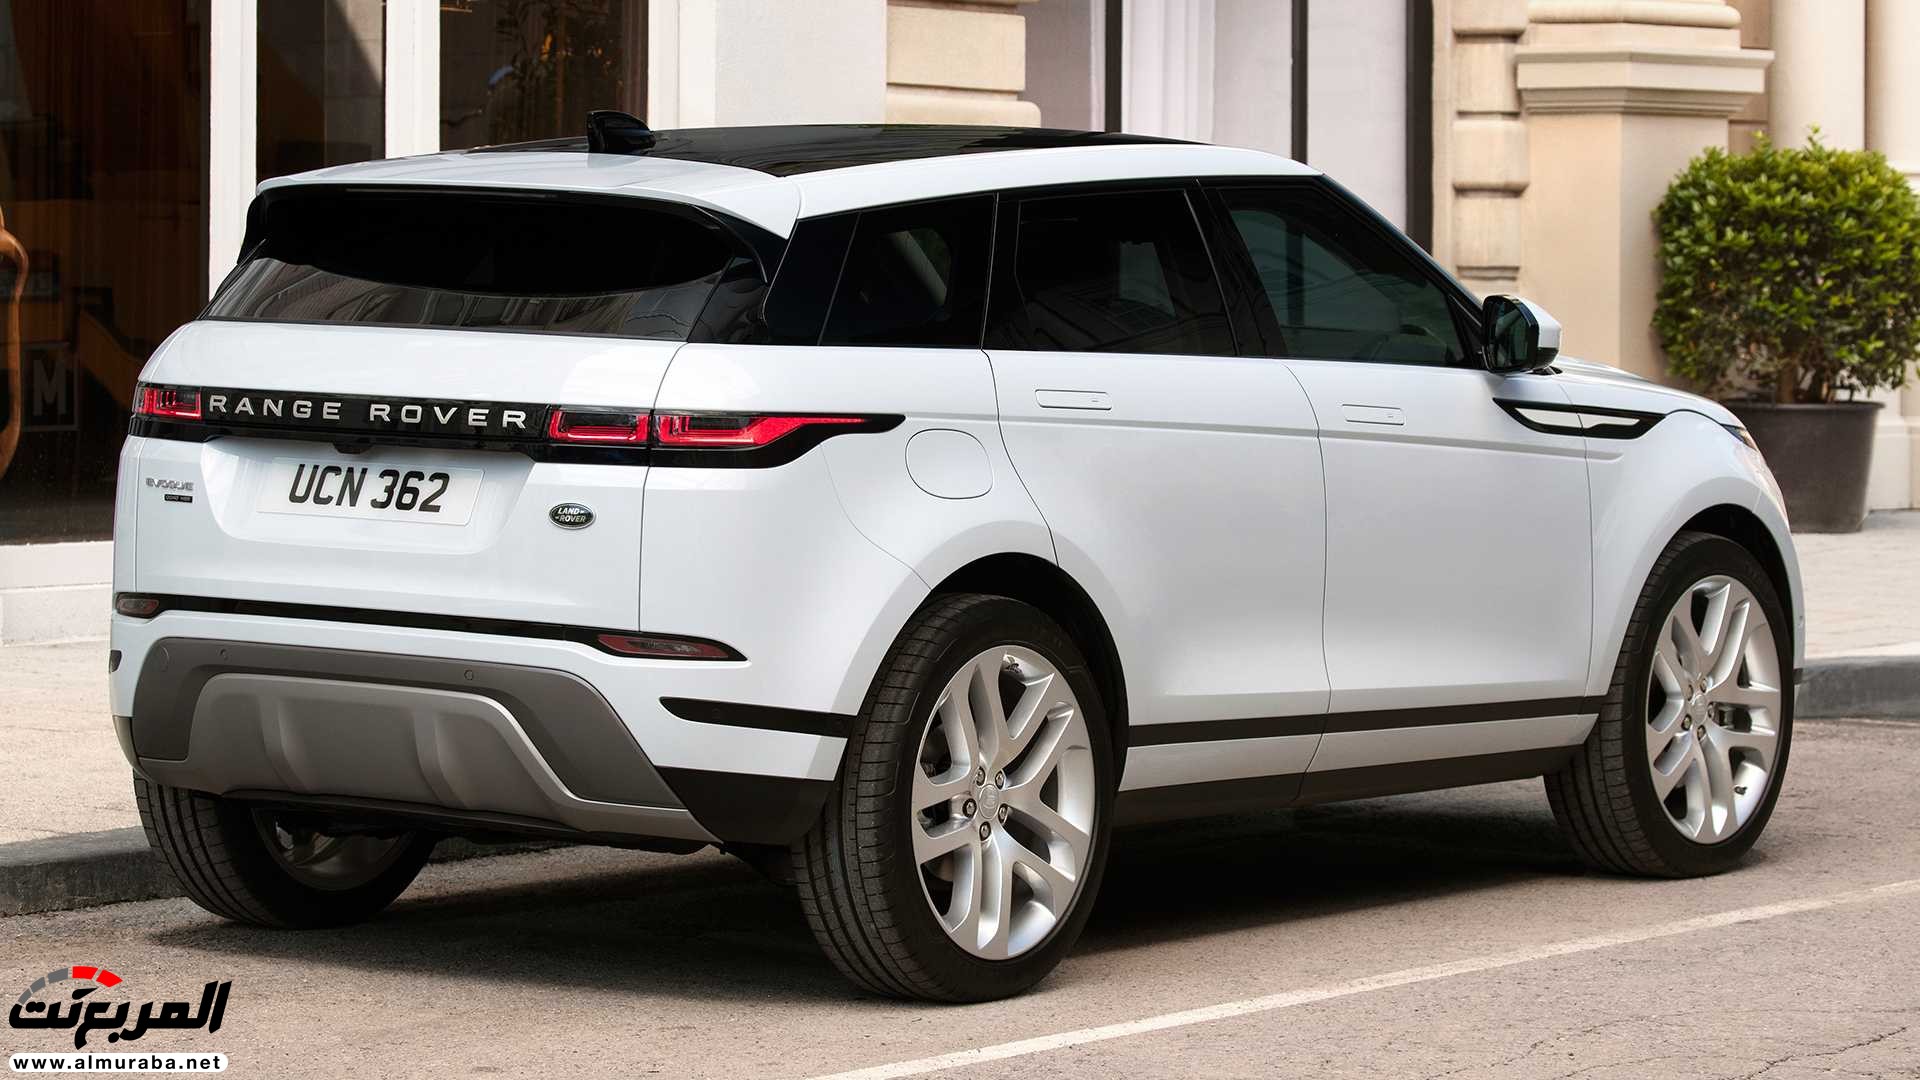 اهم 7 معلومات عن رنج روفر ايفوك 2020 الجديدة كلياً Range Rover Evoque 113